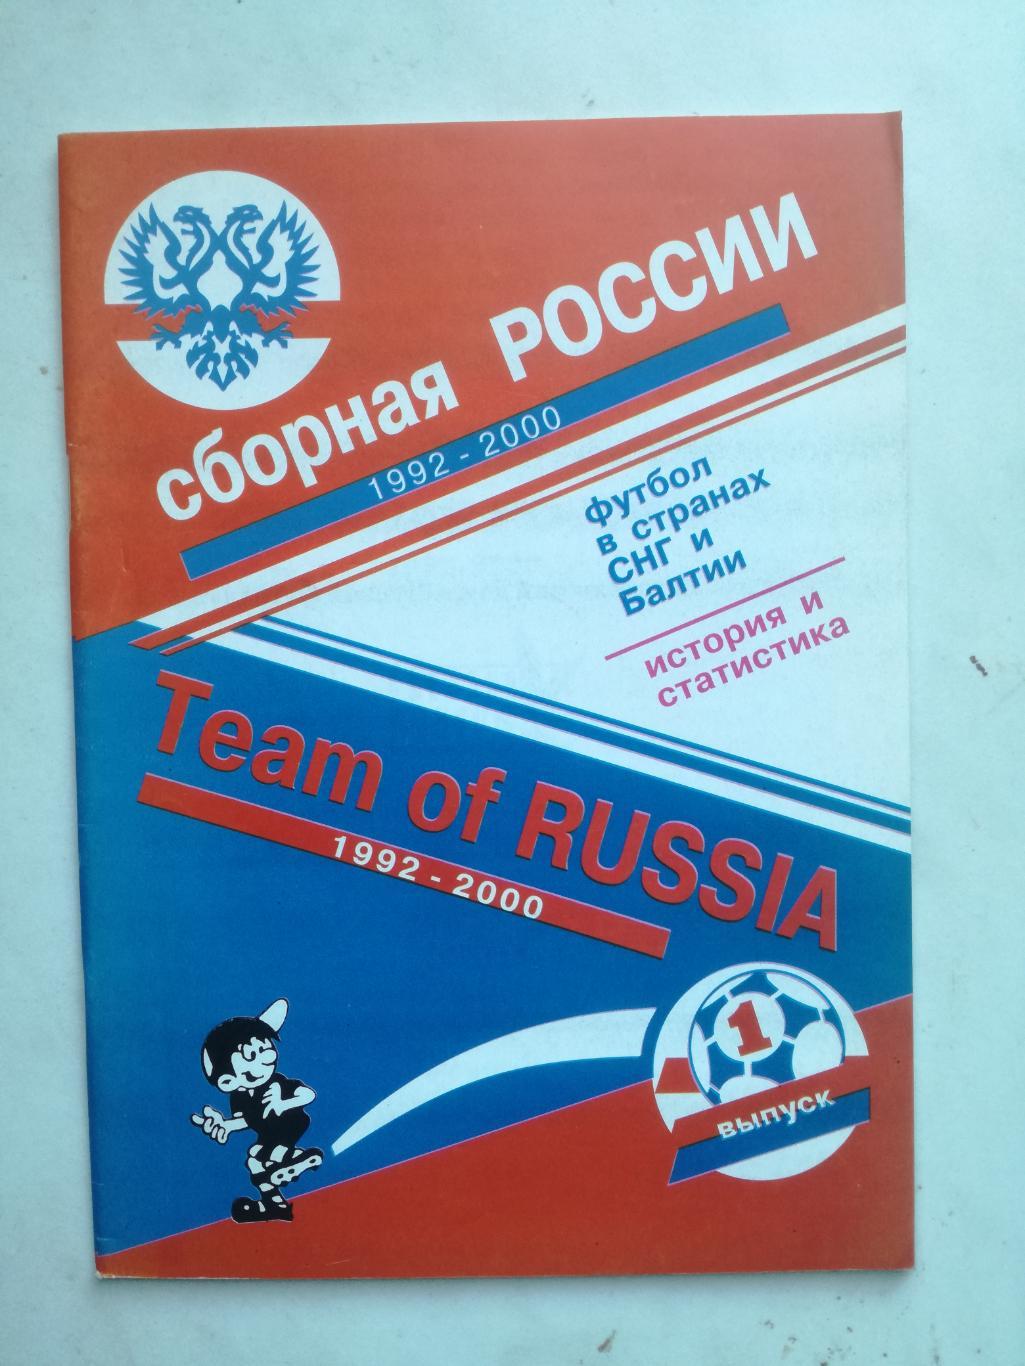 Сборная России по футболу 1992-2000